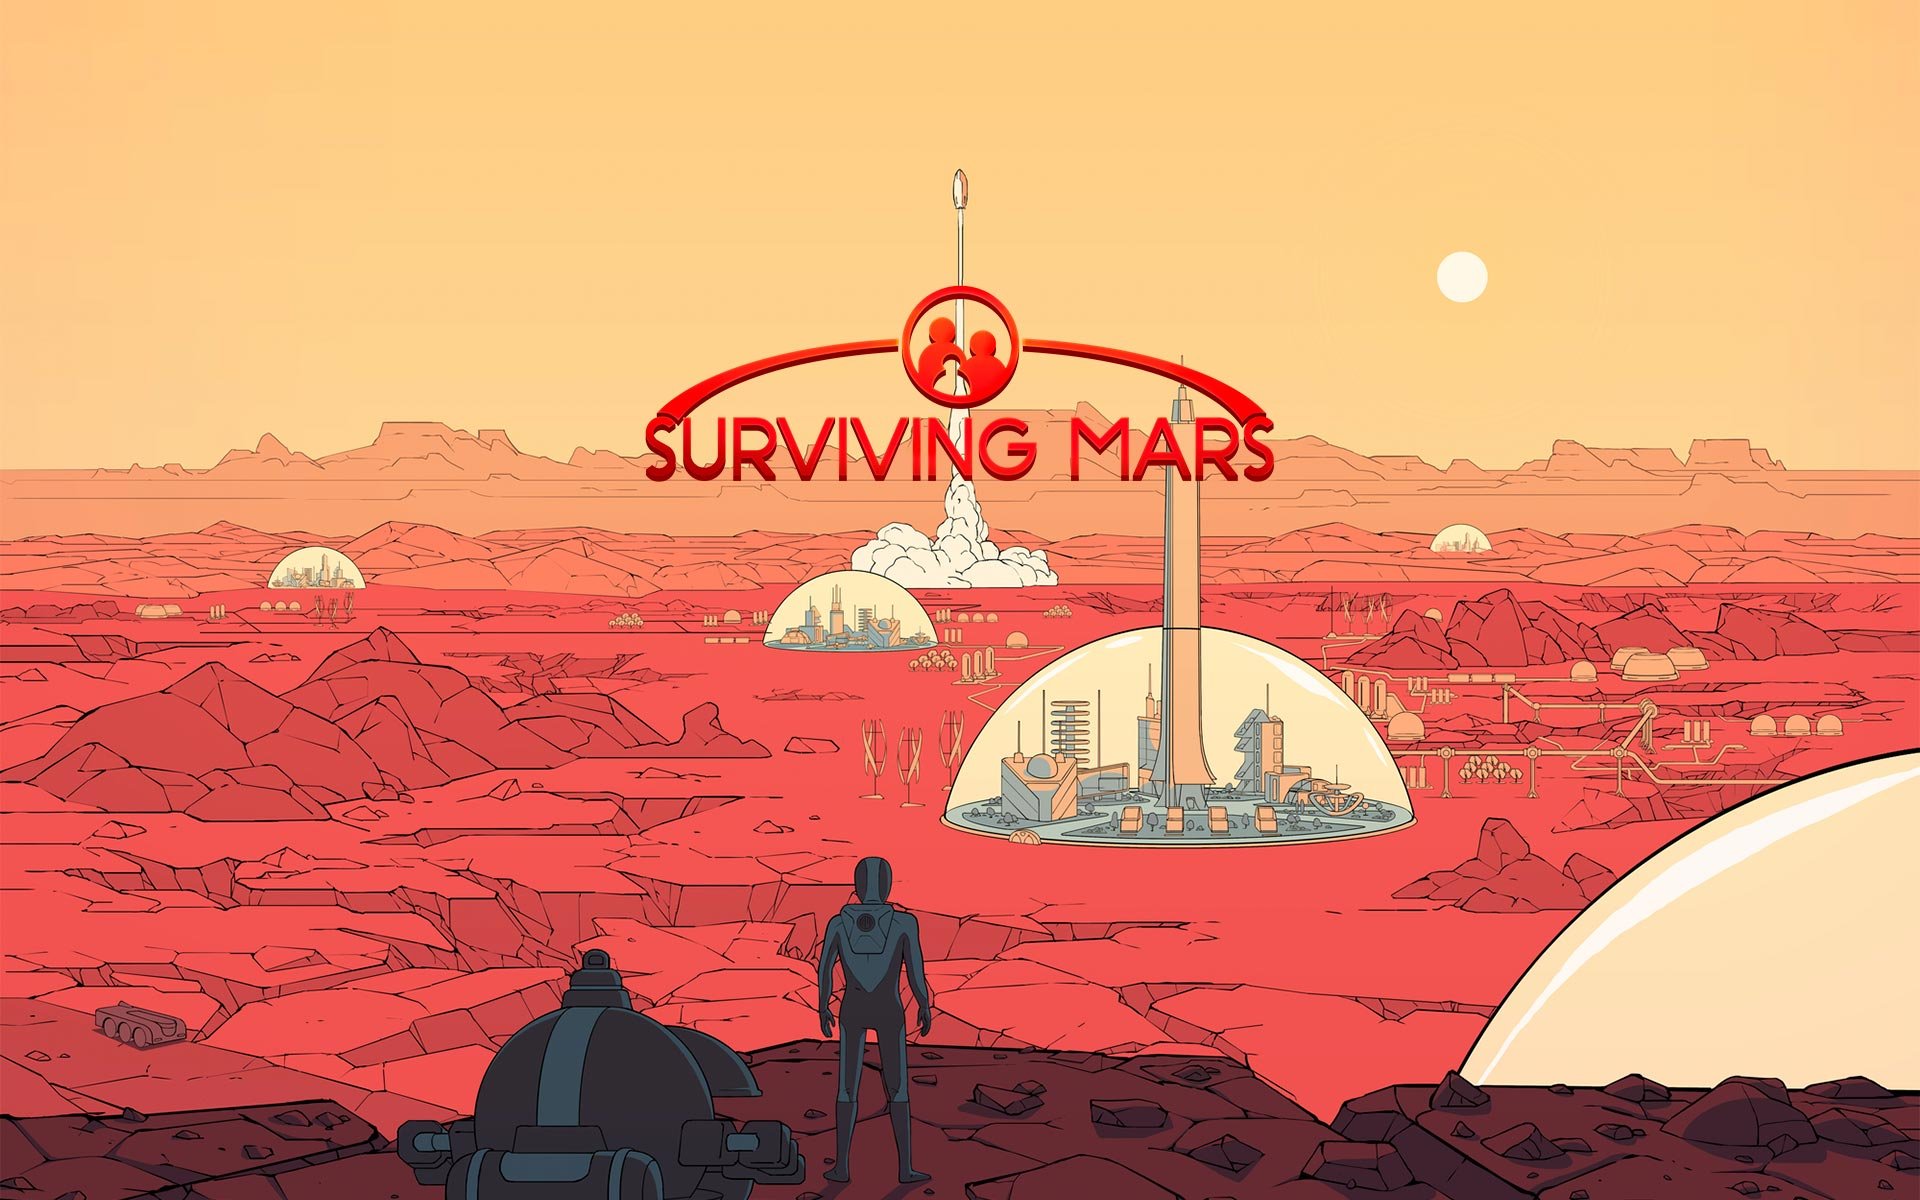 Compre Surviving Mars a partir de R$ 57.99